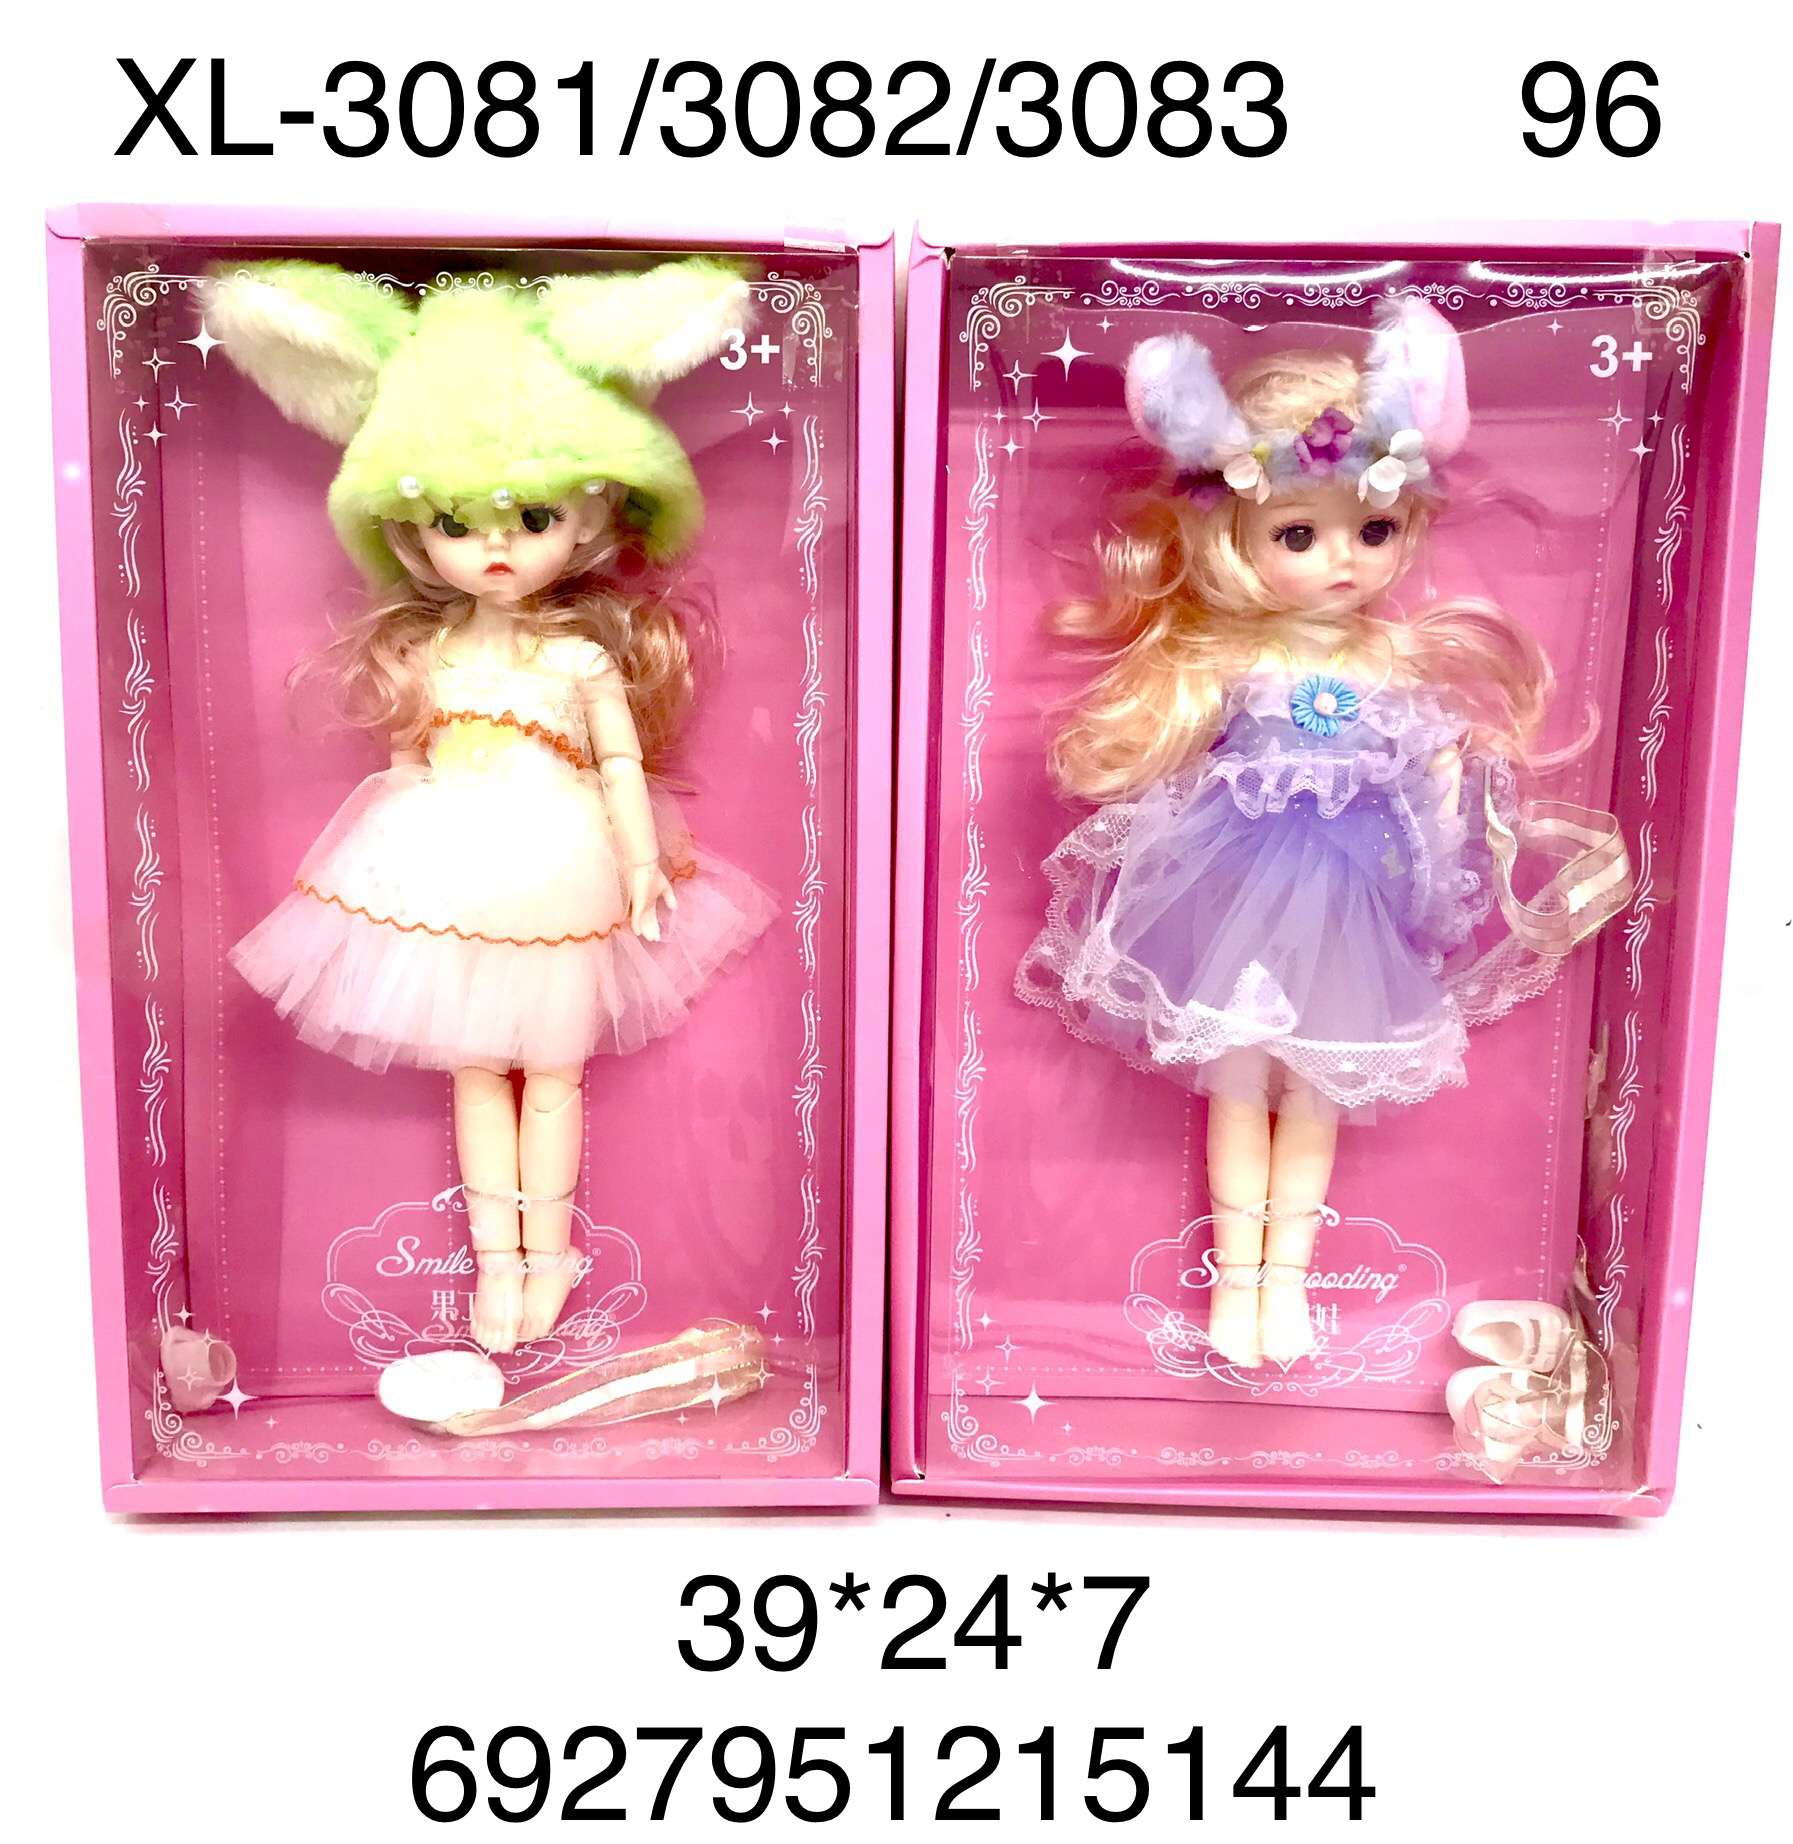 Кукла XL-3081/3082/3083 Smile в ассортименте - Пенза 